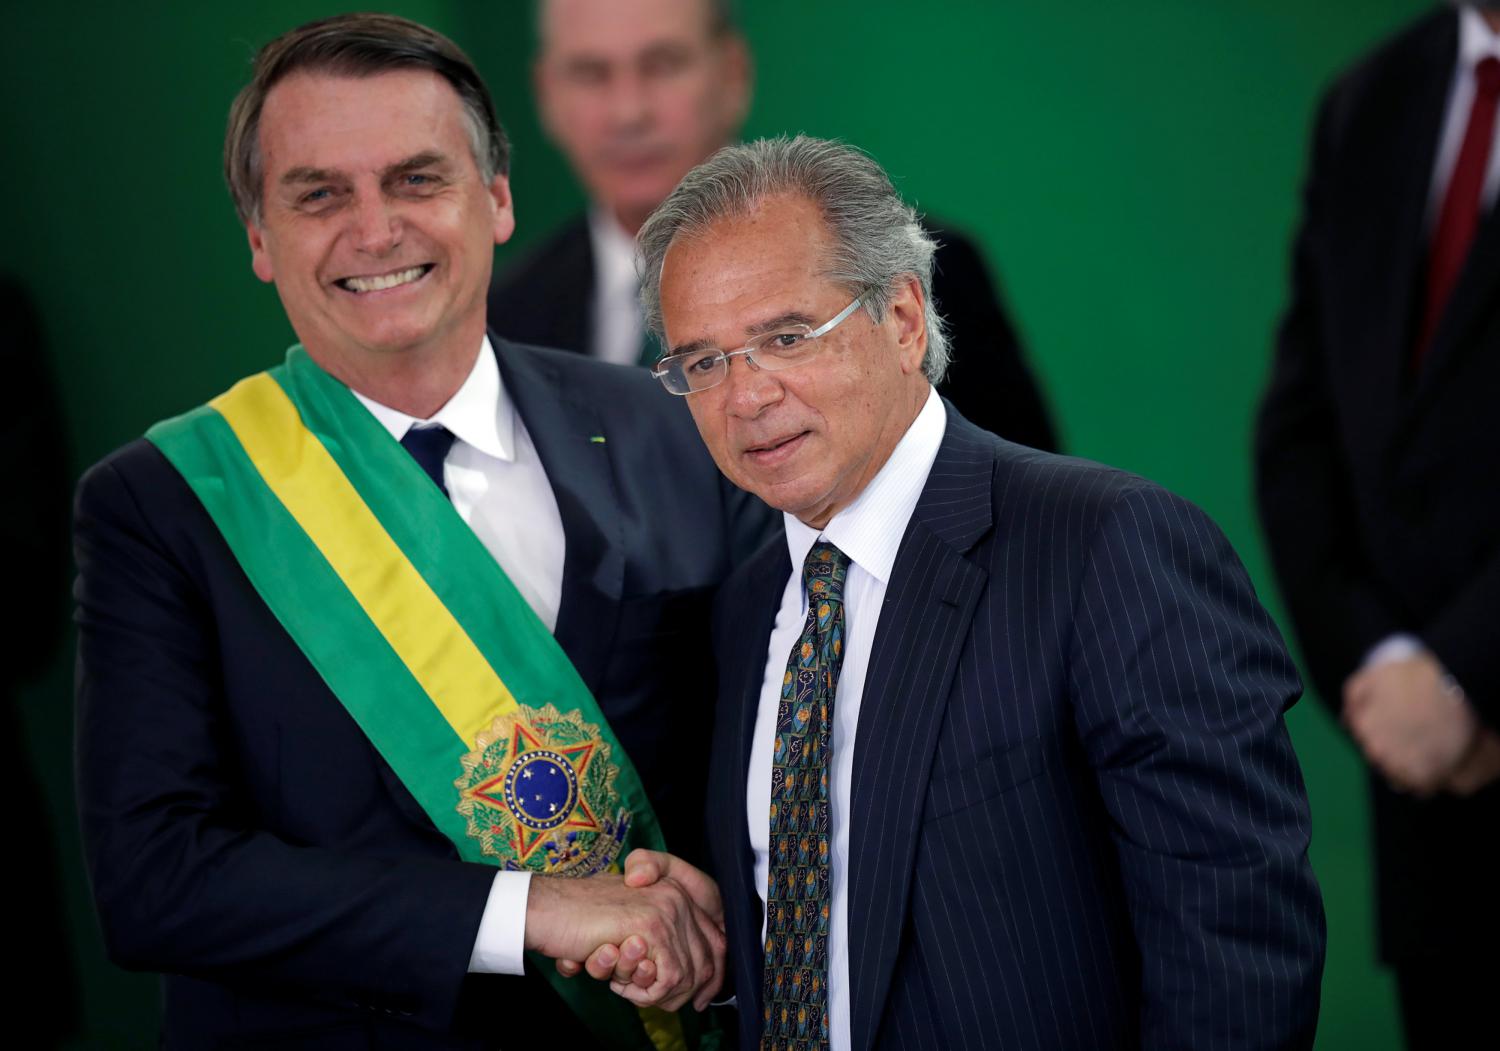 Todas as grandes mídias reunidas contra Bolsonaro, porém os Brasileiros e as redes sociais estão do lado dele.